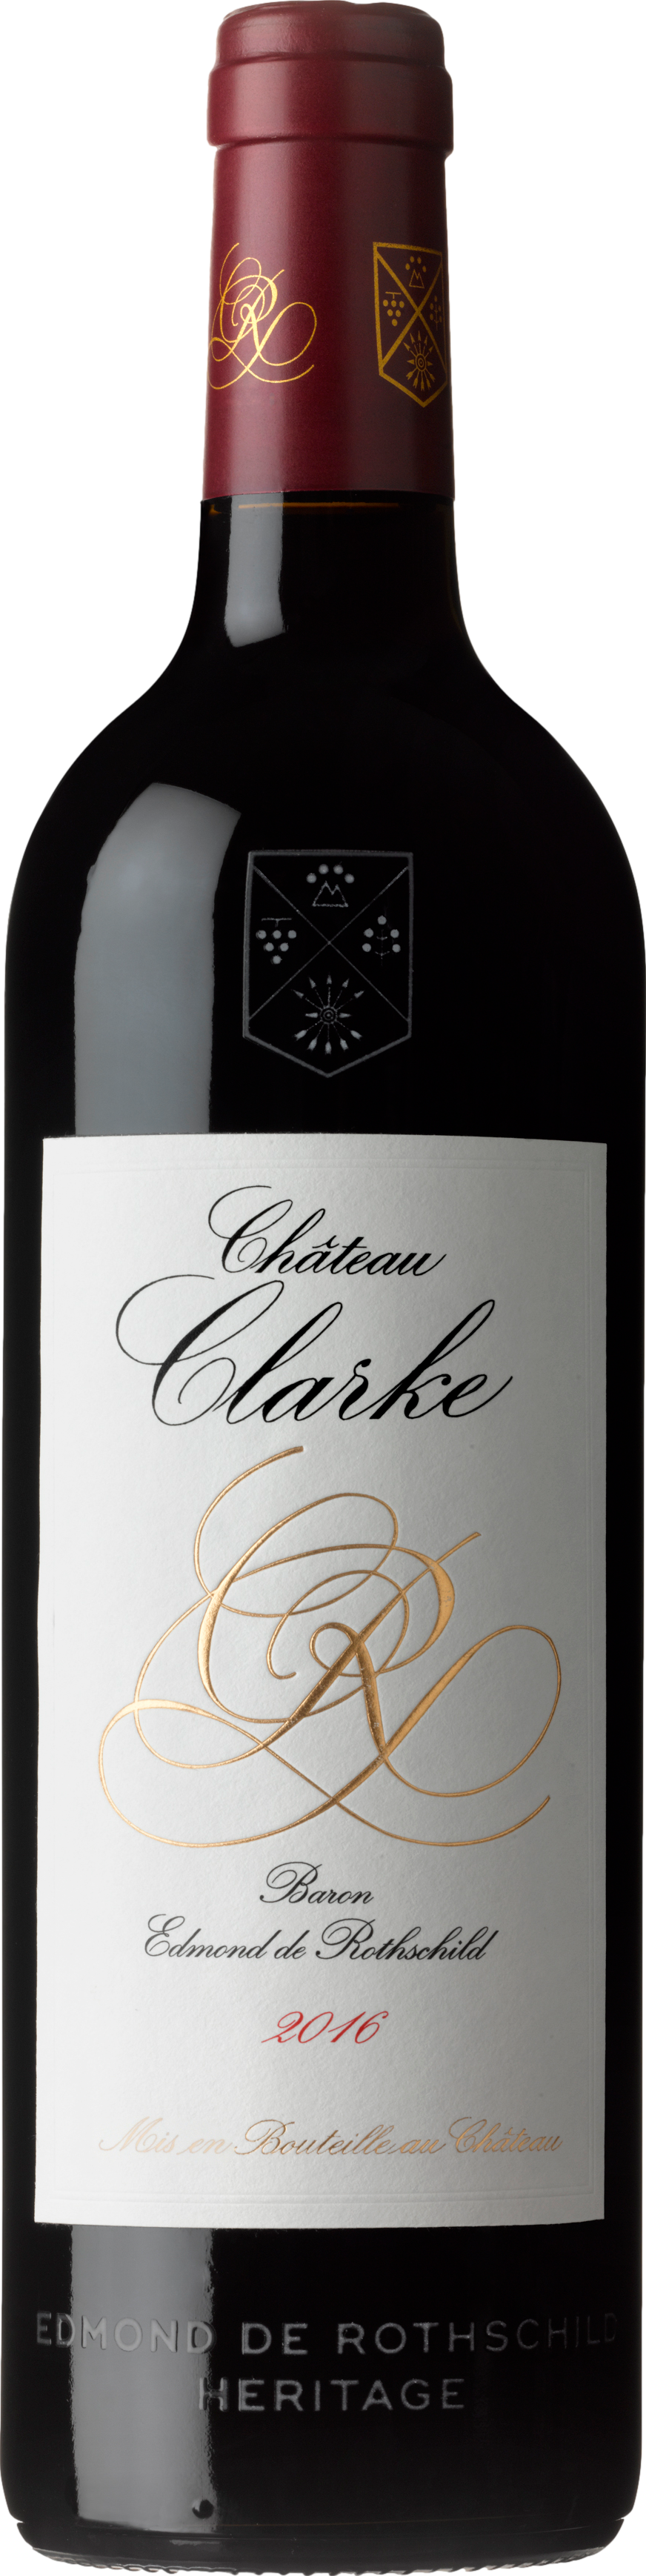 Clarke günstig Kaufen-Edmond de Rothschild Chateau Clarke 2015. Edmond de Rothschild Chateau Clarke 2015 . 